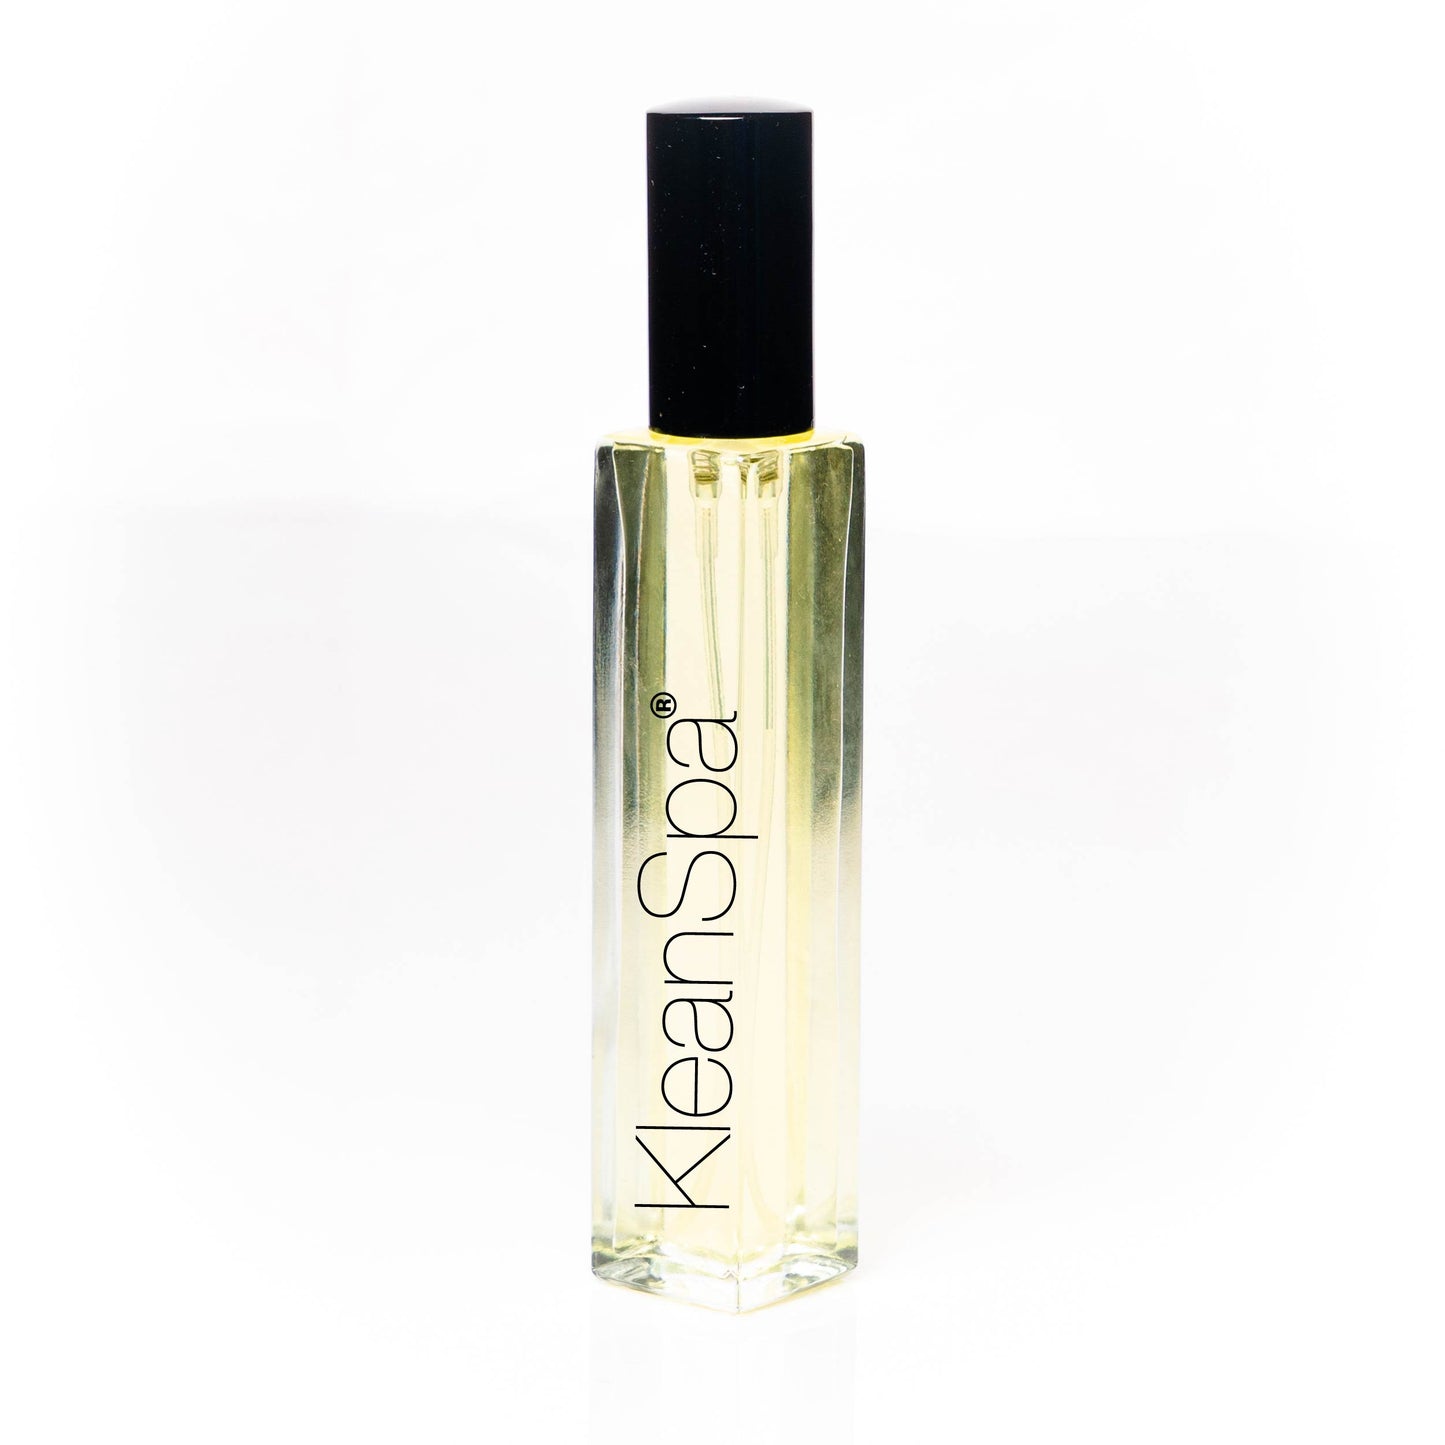 GOLDEN SAND Perfume Body Oil 1.0 oz - 30 ml Roll On Bottle NEW Free Ship  UNISEX